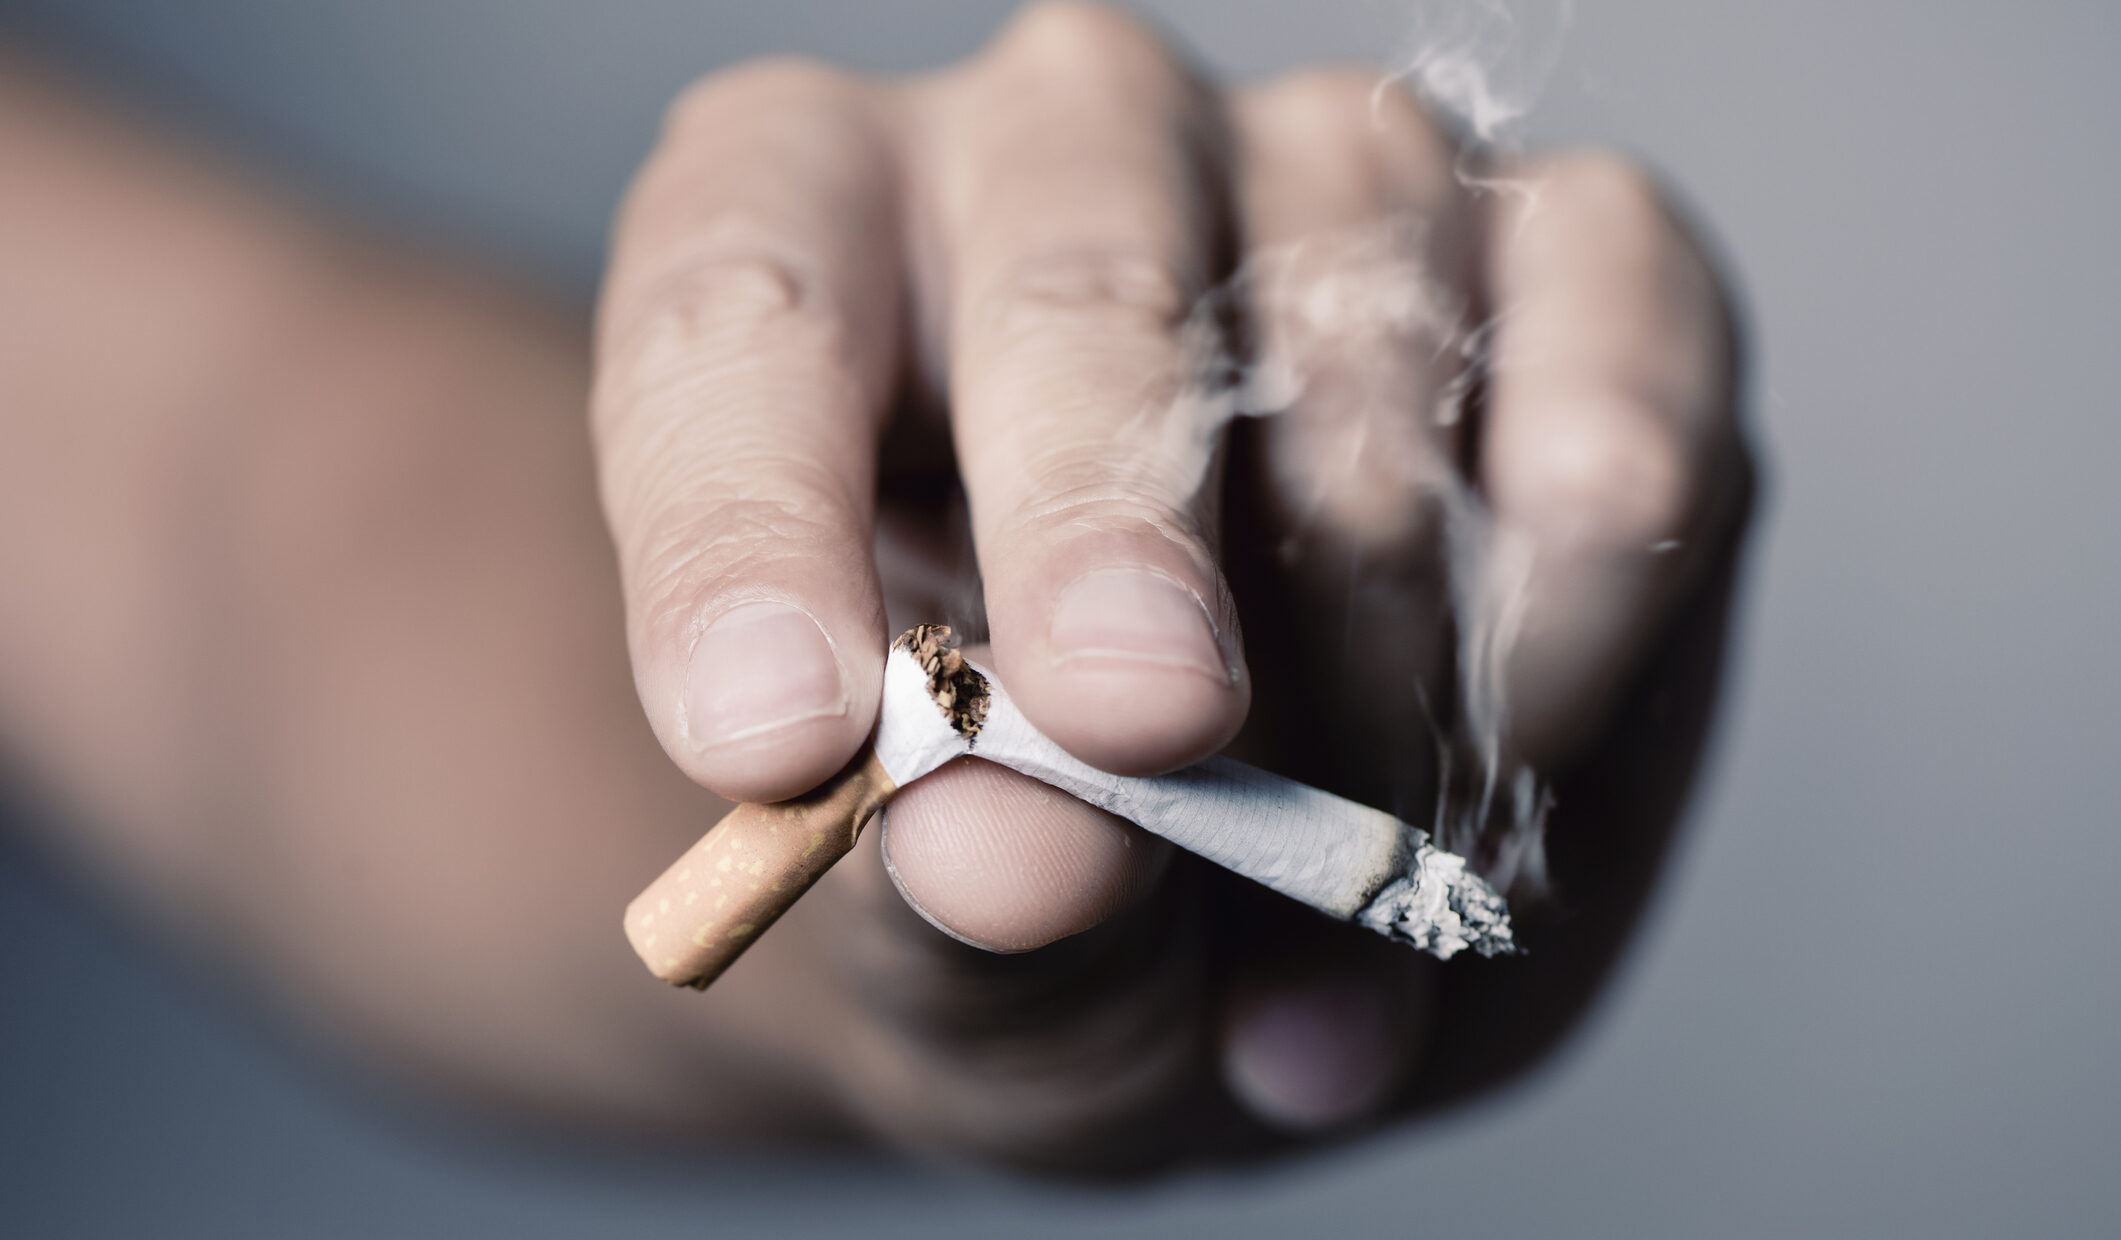 Kick that habit: No smoke, no disease